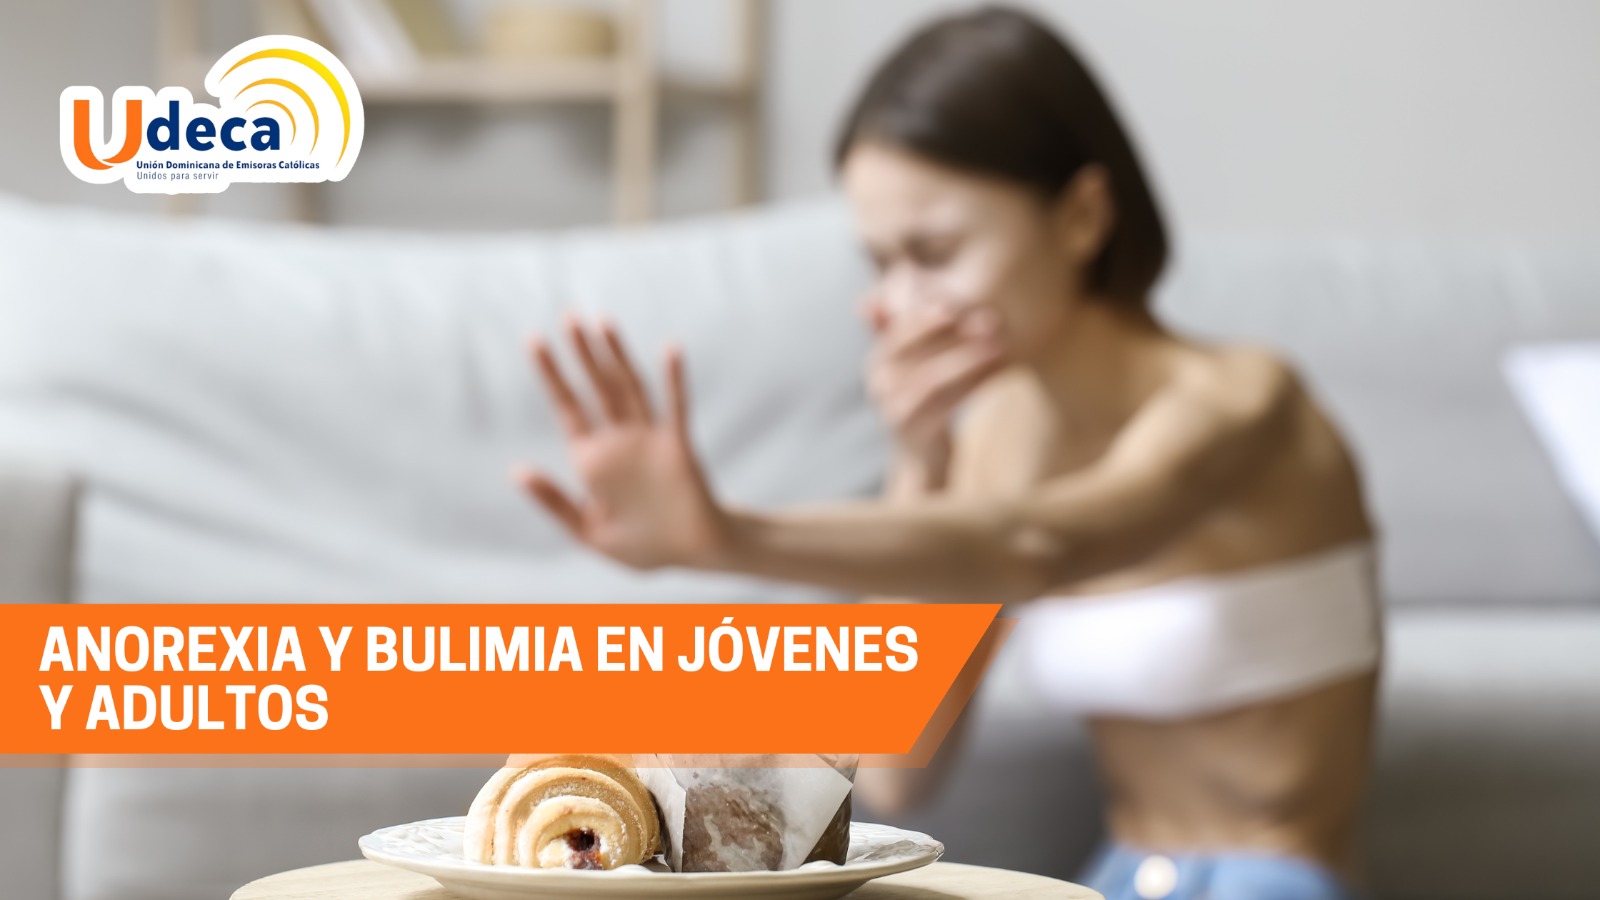 “Anorexia y Bulimia en jóvenes y adultos”